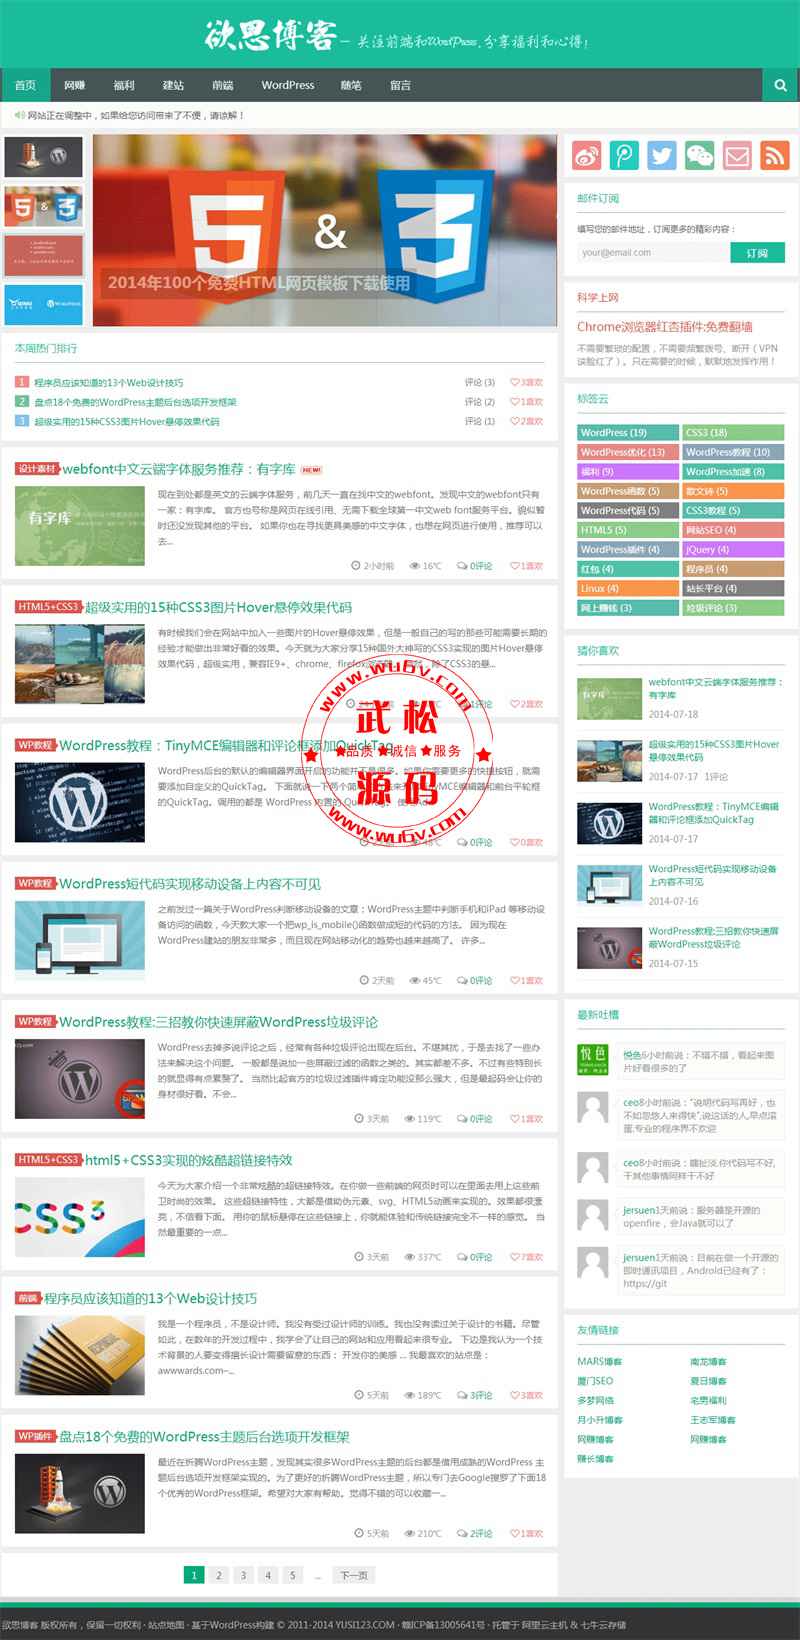 WordPress简洁主题Yusi1.0-扁平化+响应式-最好用主题分享下载OD1557